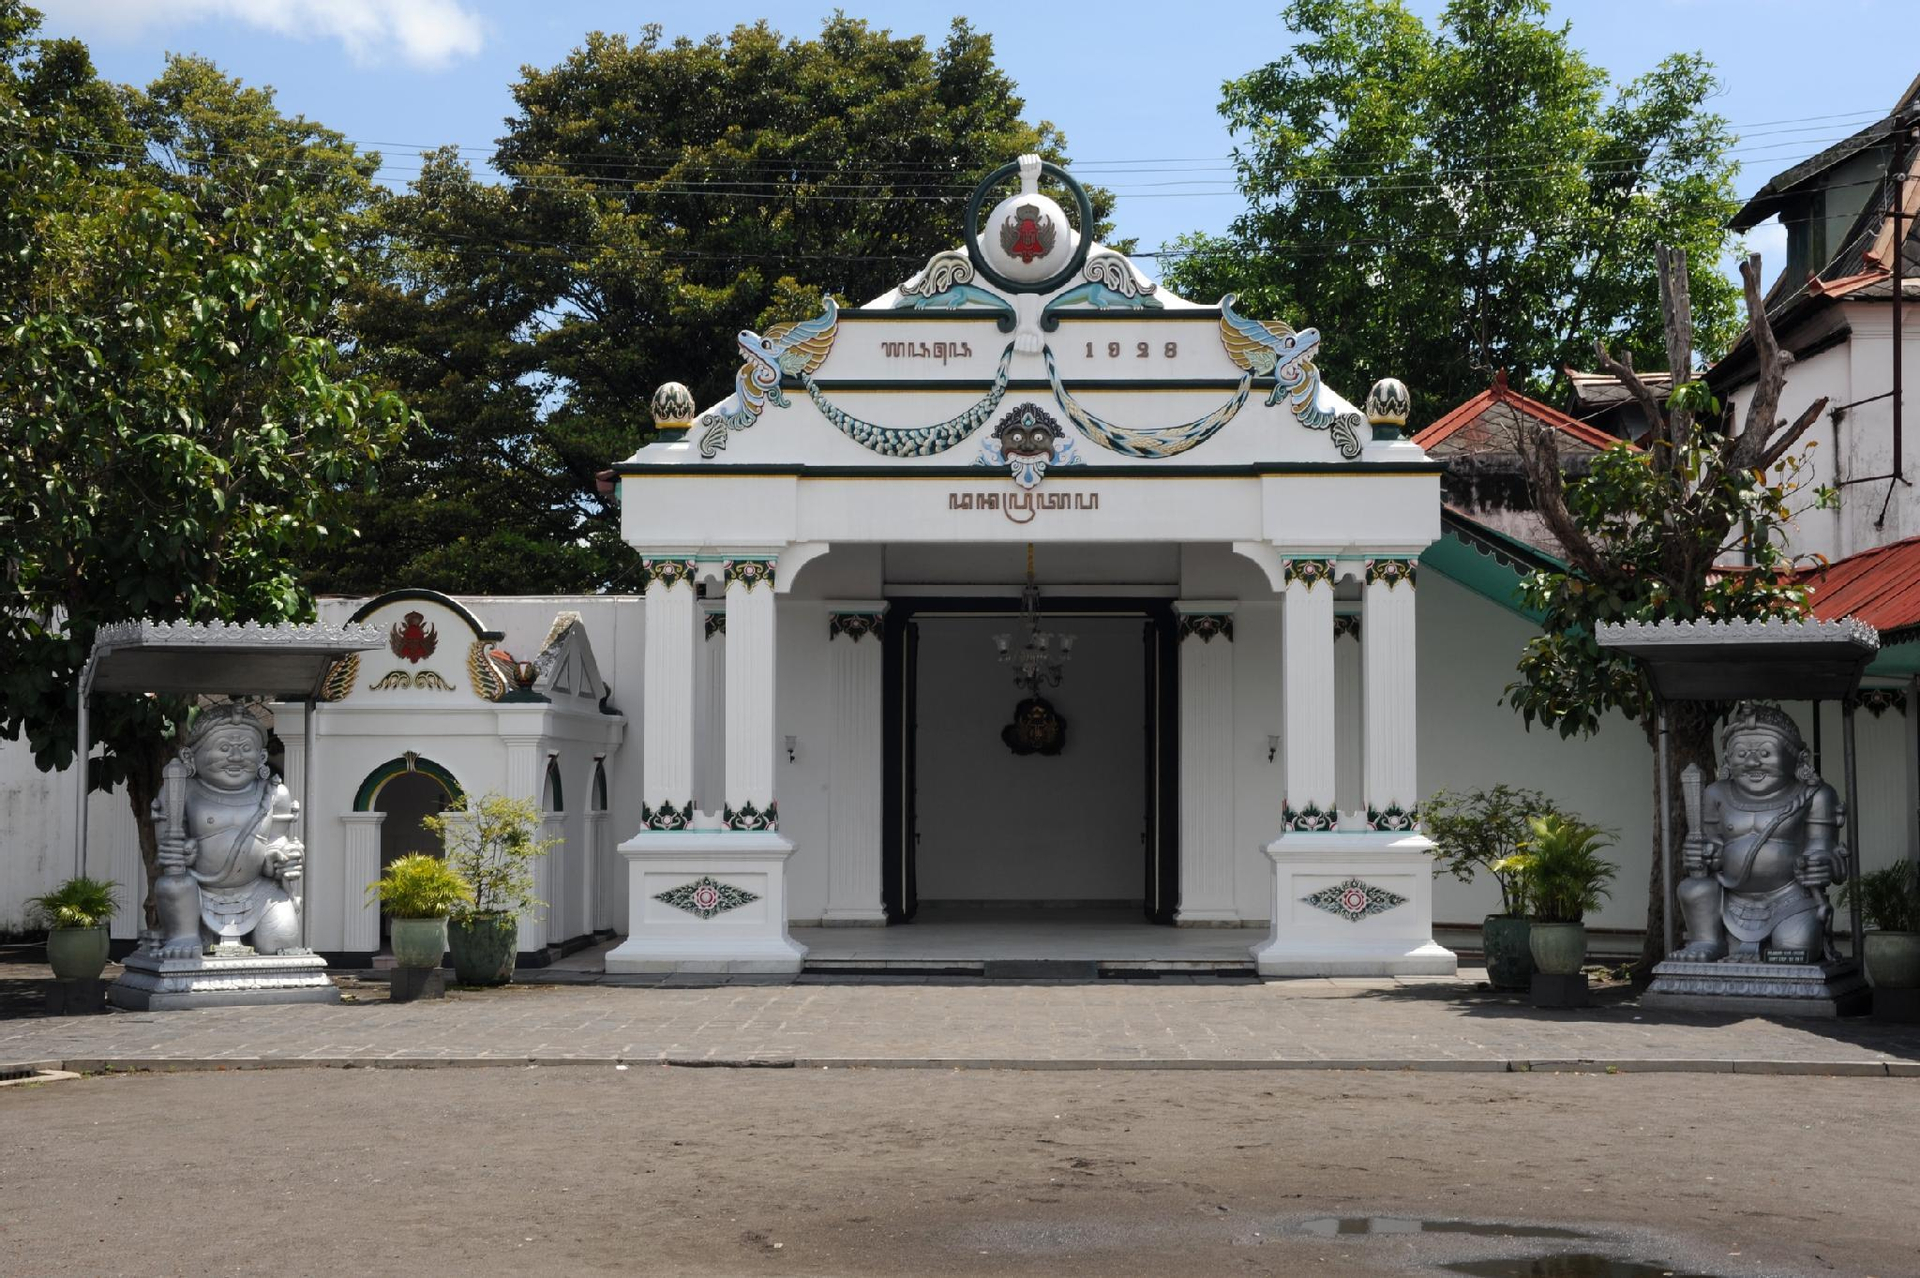 Exterior & Views 1, Zest Hotel Yogyakarta - CHSE Certified, Yogyakarta